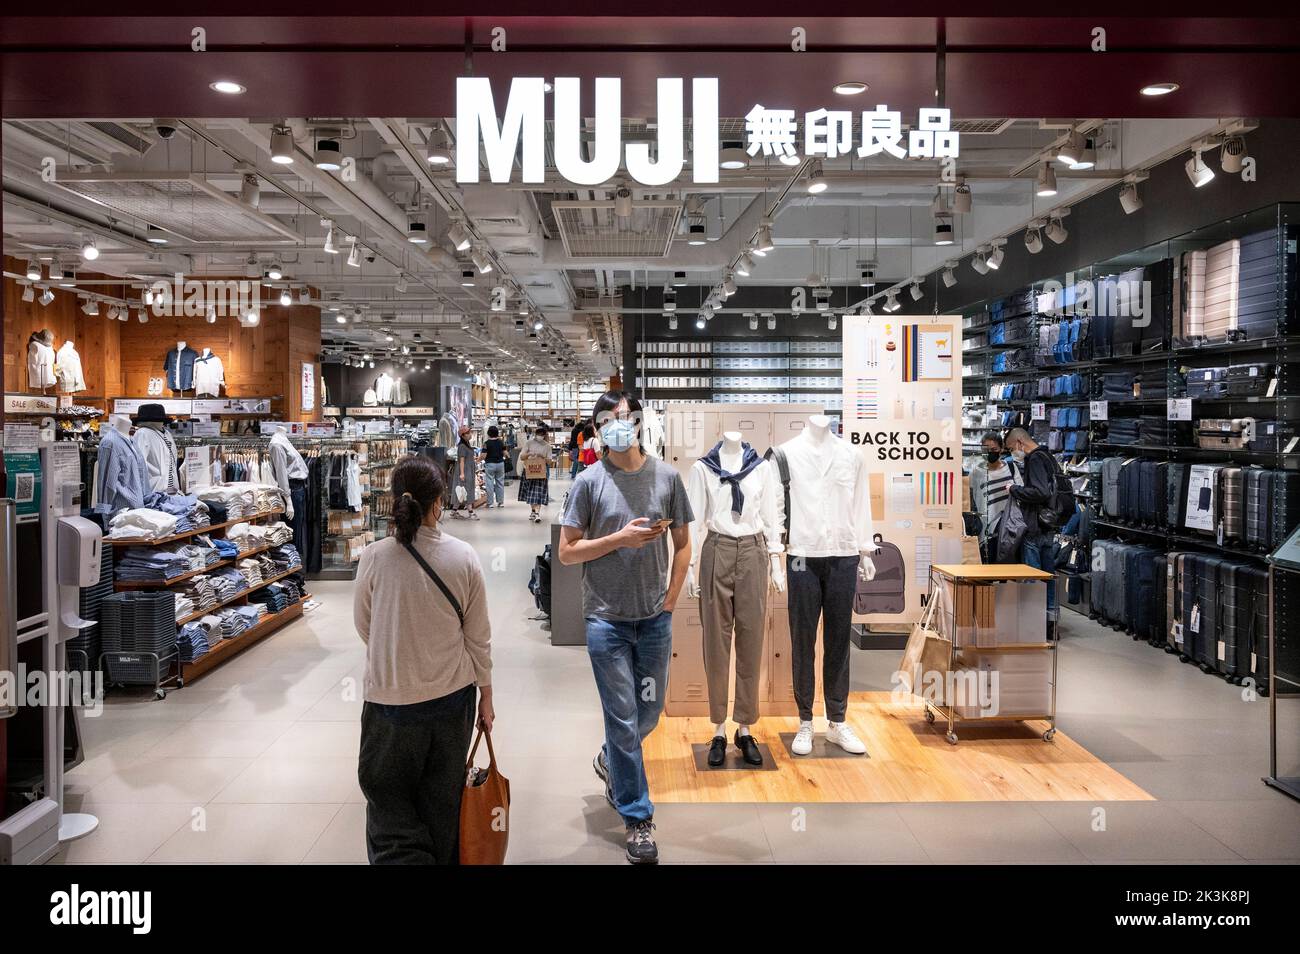 Les acheteurs sont vus dans le magasin Muji, la société japonaise de vente au détail de vêtements et de produits ménagers, à Hong Kong. Banque D'Images